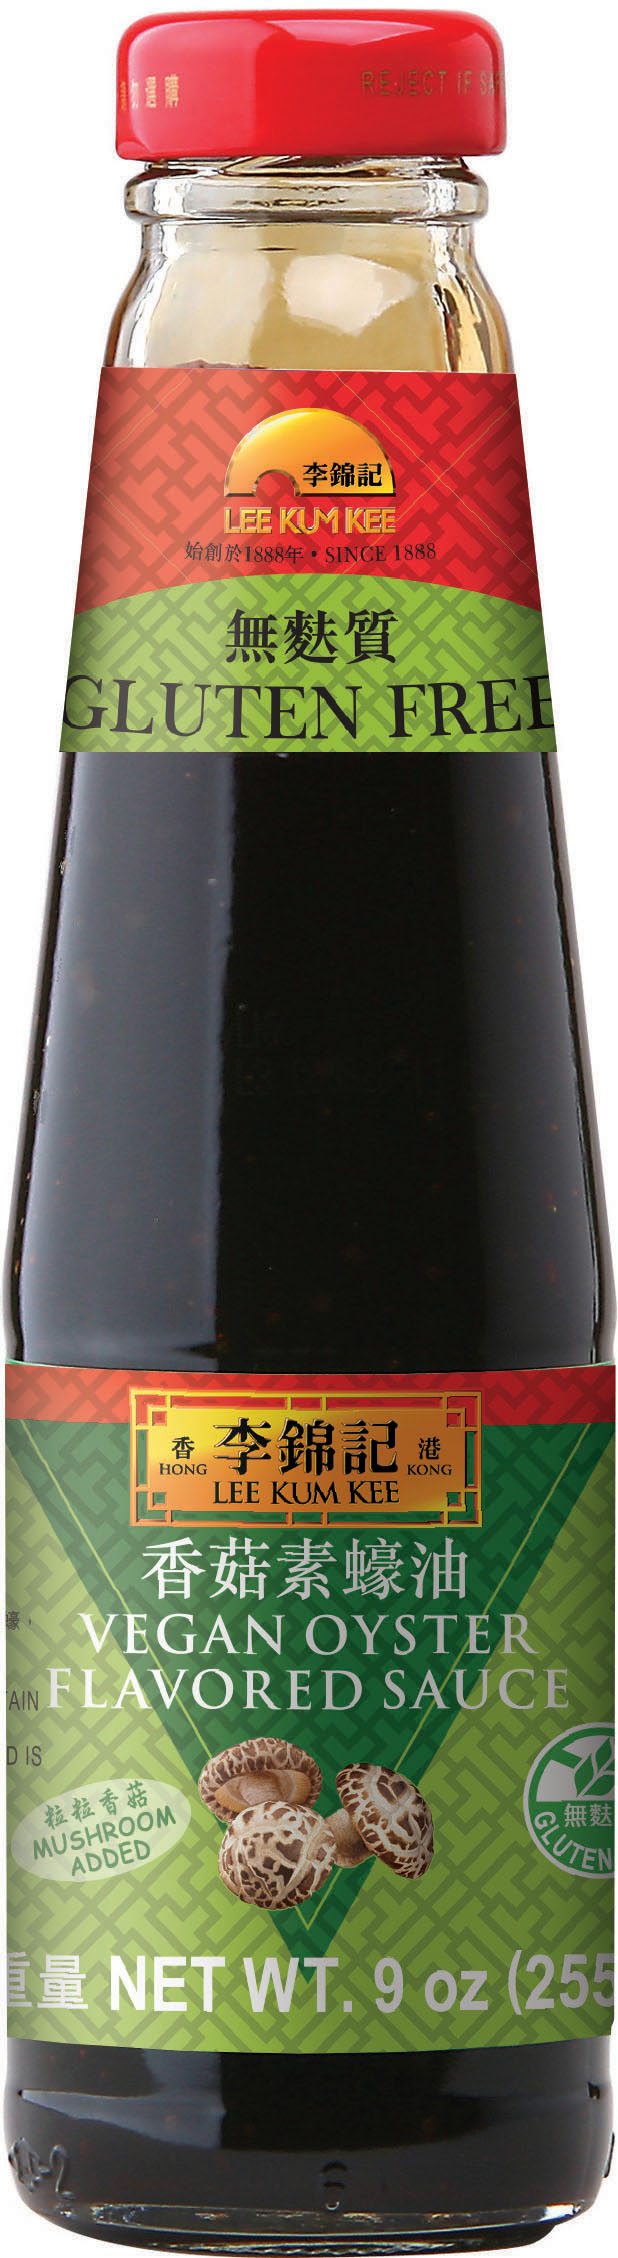 香菇素蠔油, 9 oz (255 g), 瓶裝